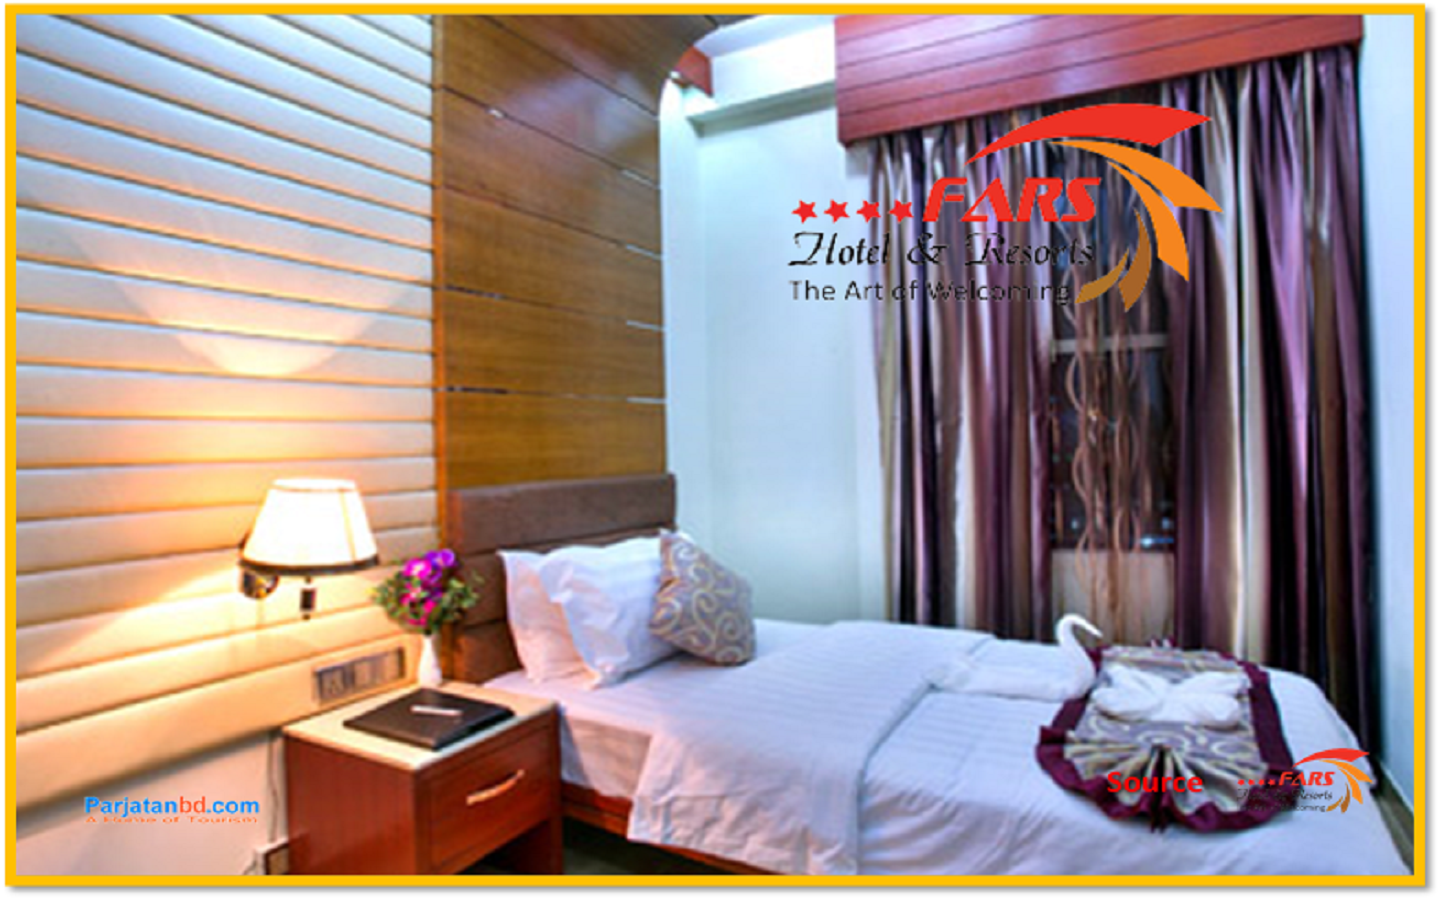 Room Family Suite -1, FARS Hotel & Resorts, Bijonagar